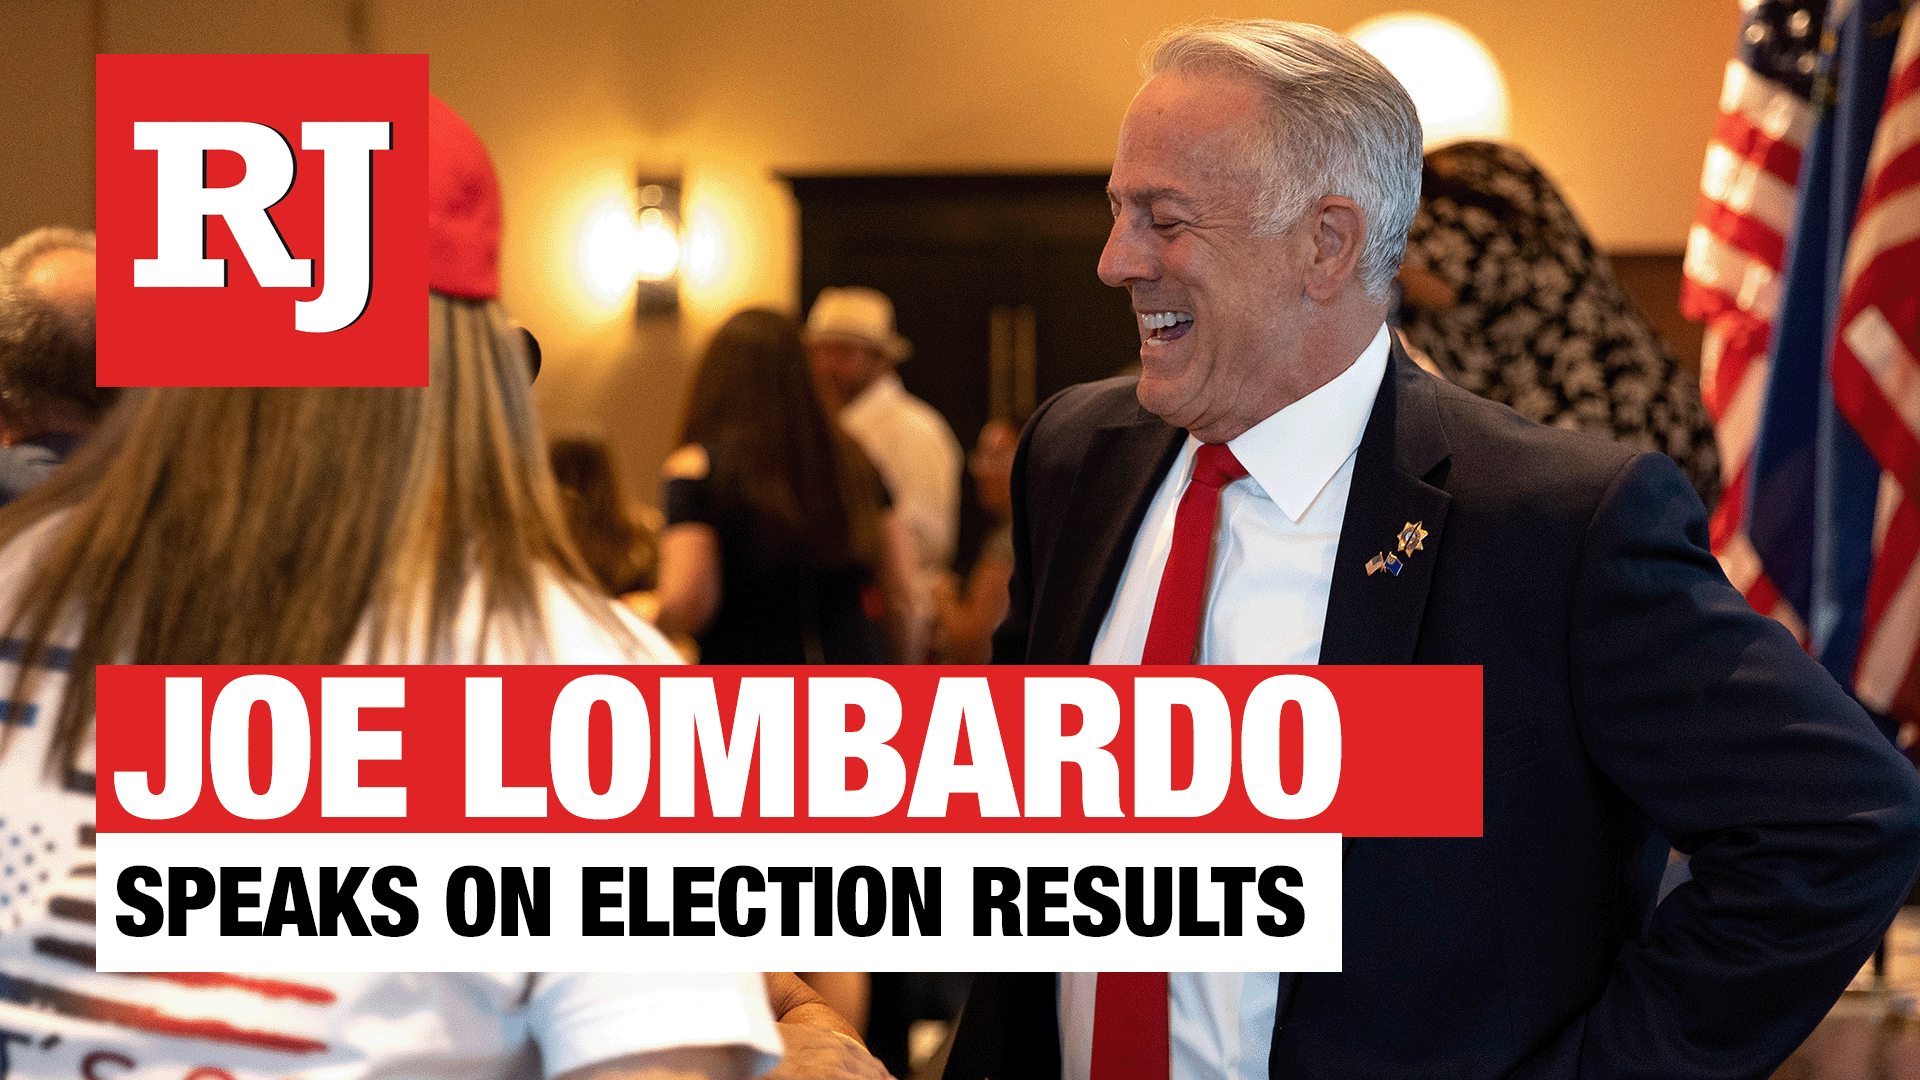 Joe Lombardo speaks on election results